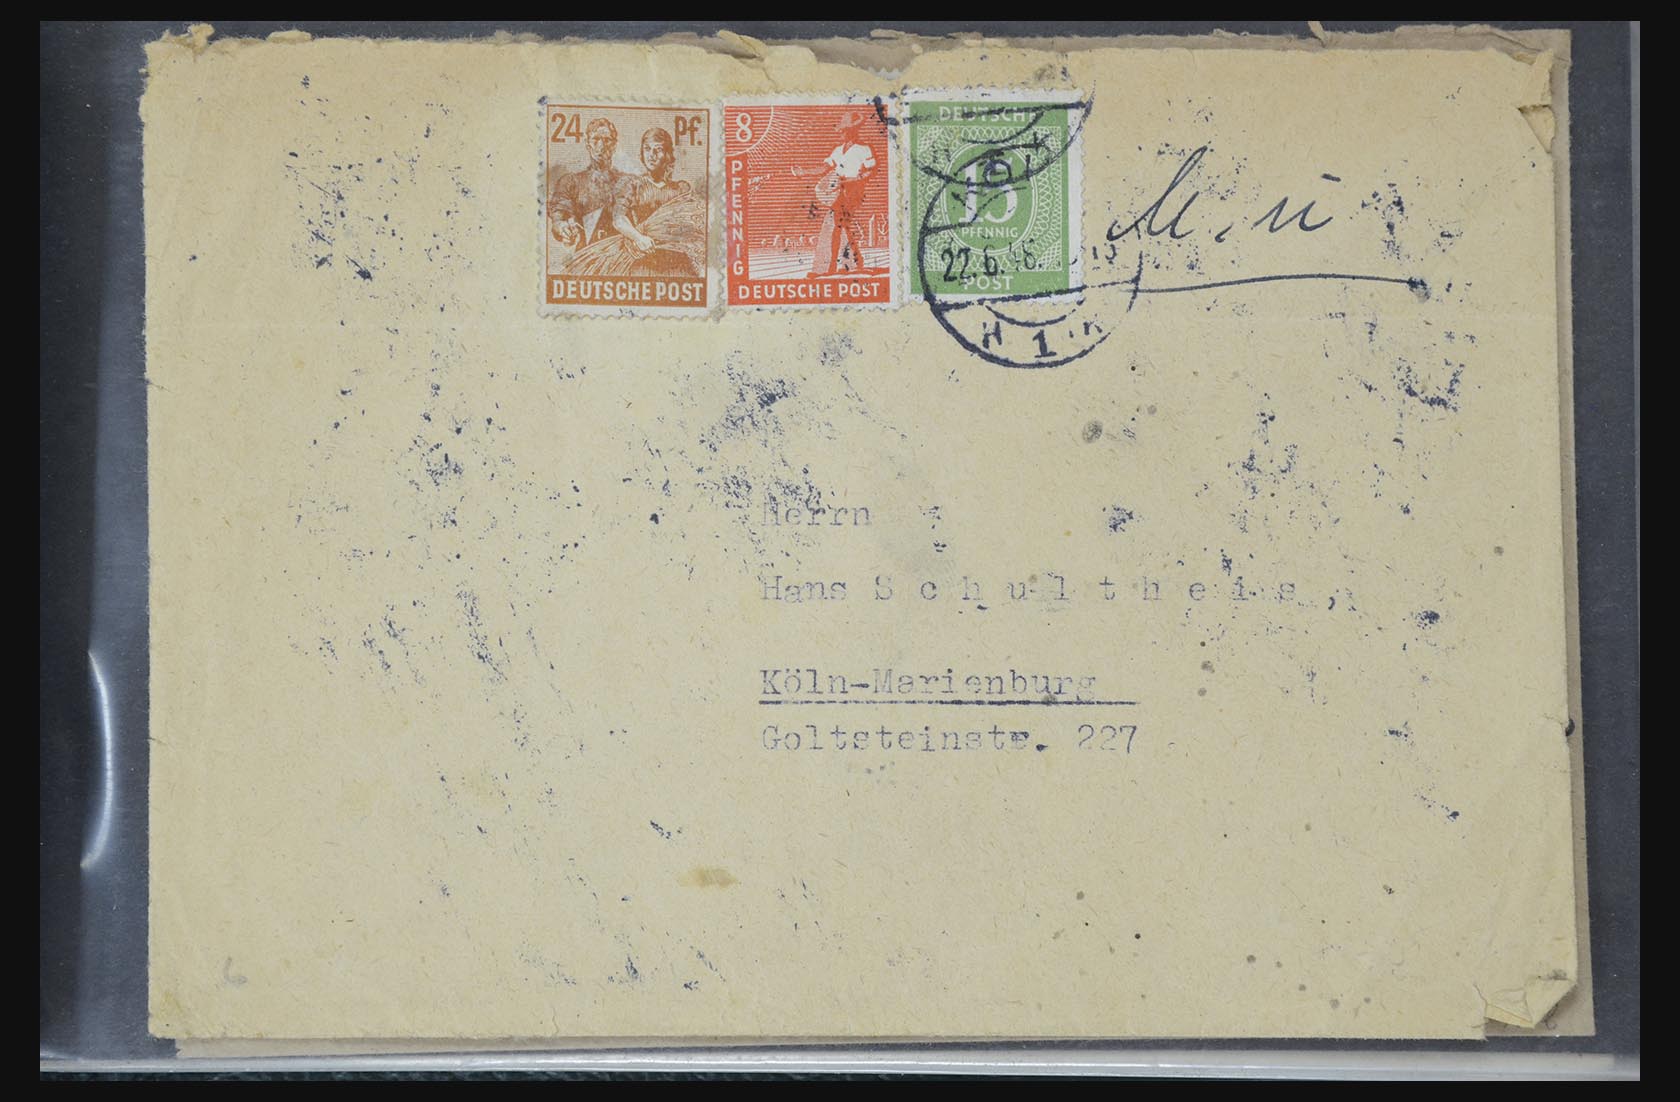 31581 031 - 31581 Duitsland brieven en FDC's 1945-1981.